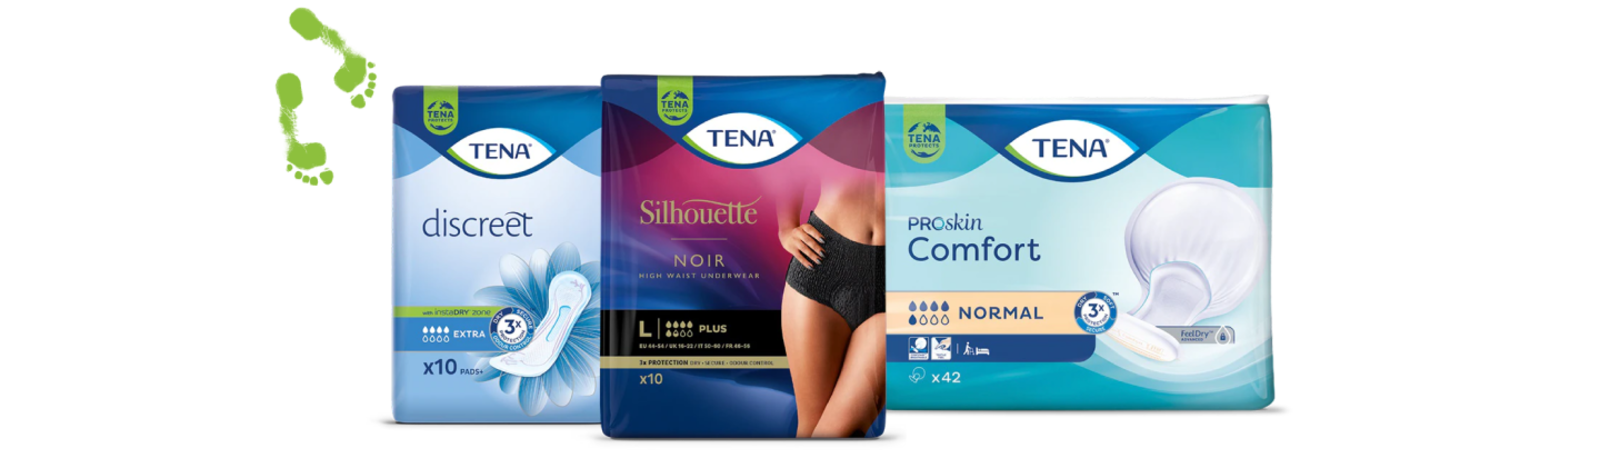 Produktabbildungen von TENA Silhouette Unterwäsche, TENA Discreet Einlagen und TENA Proskin Comfort